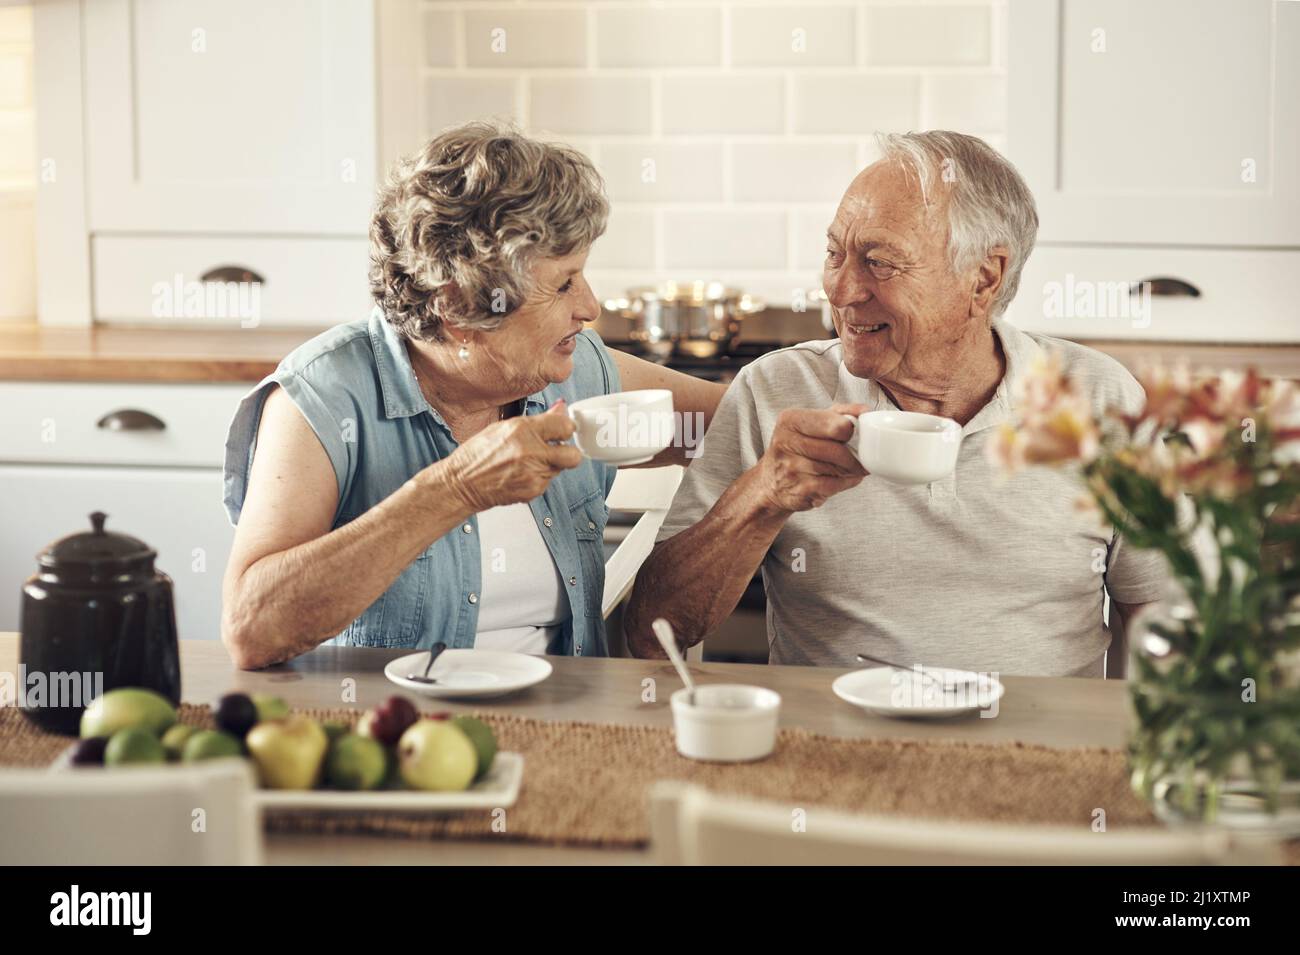 Una buena taza de café marca el tono del día. Una foto de una pareja mayor desayunando juntos en casa. Foto de stock